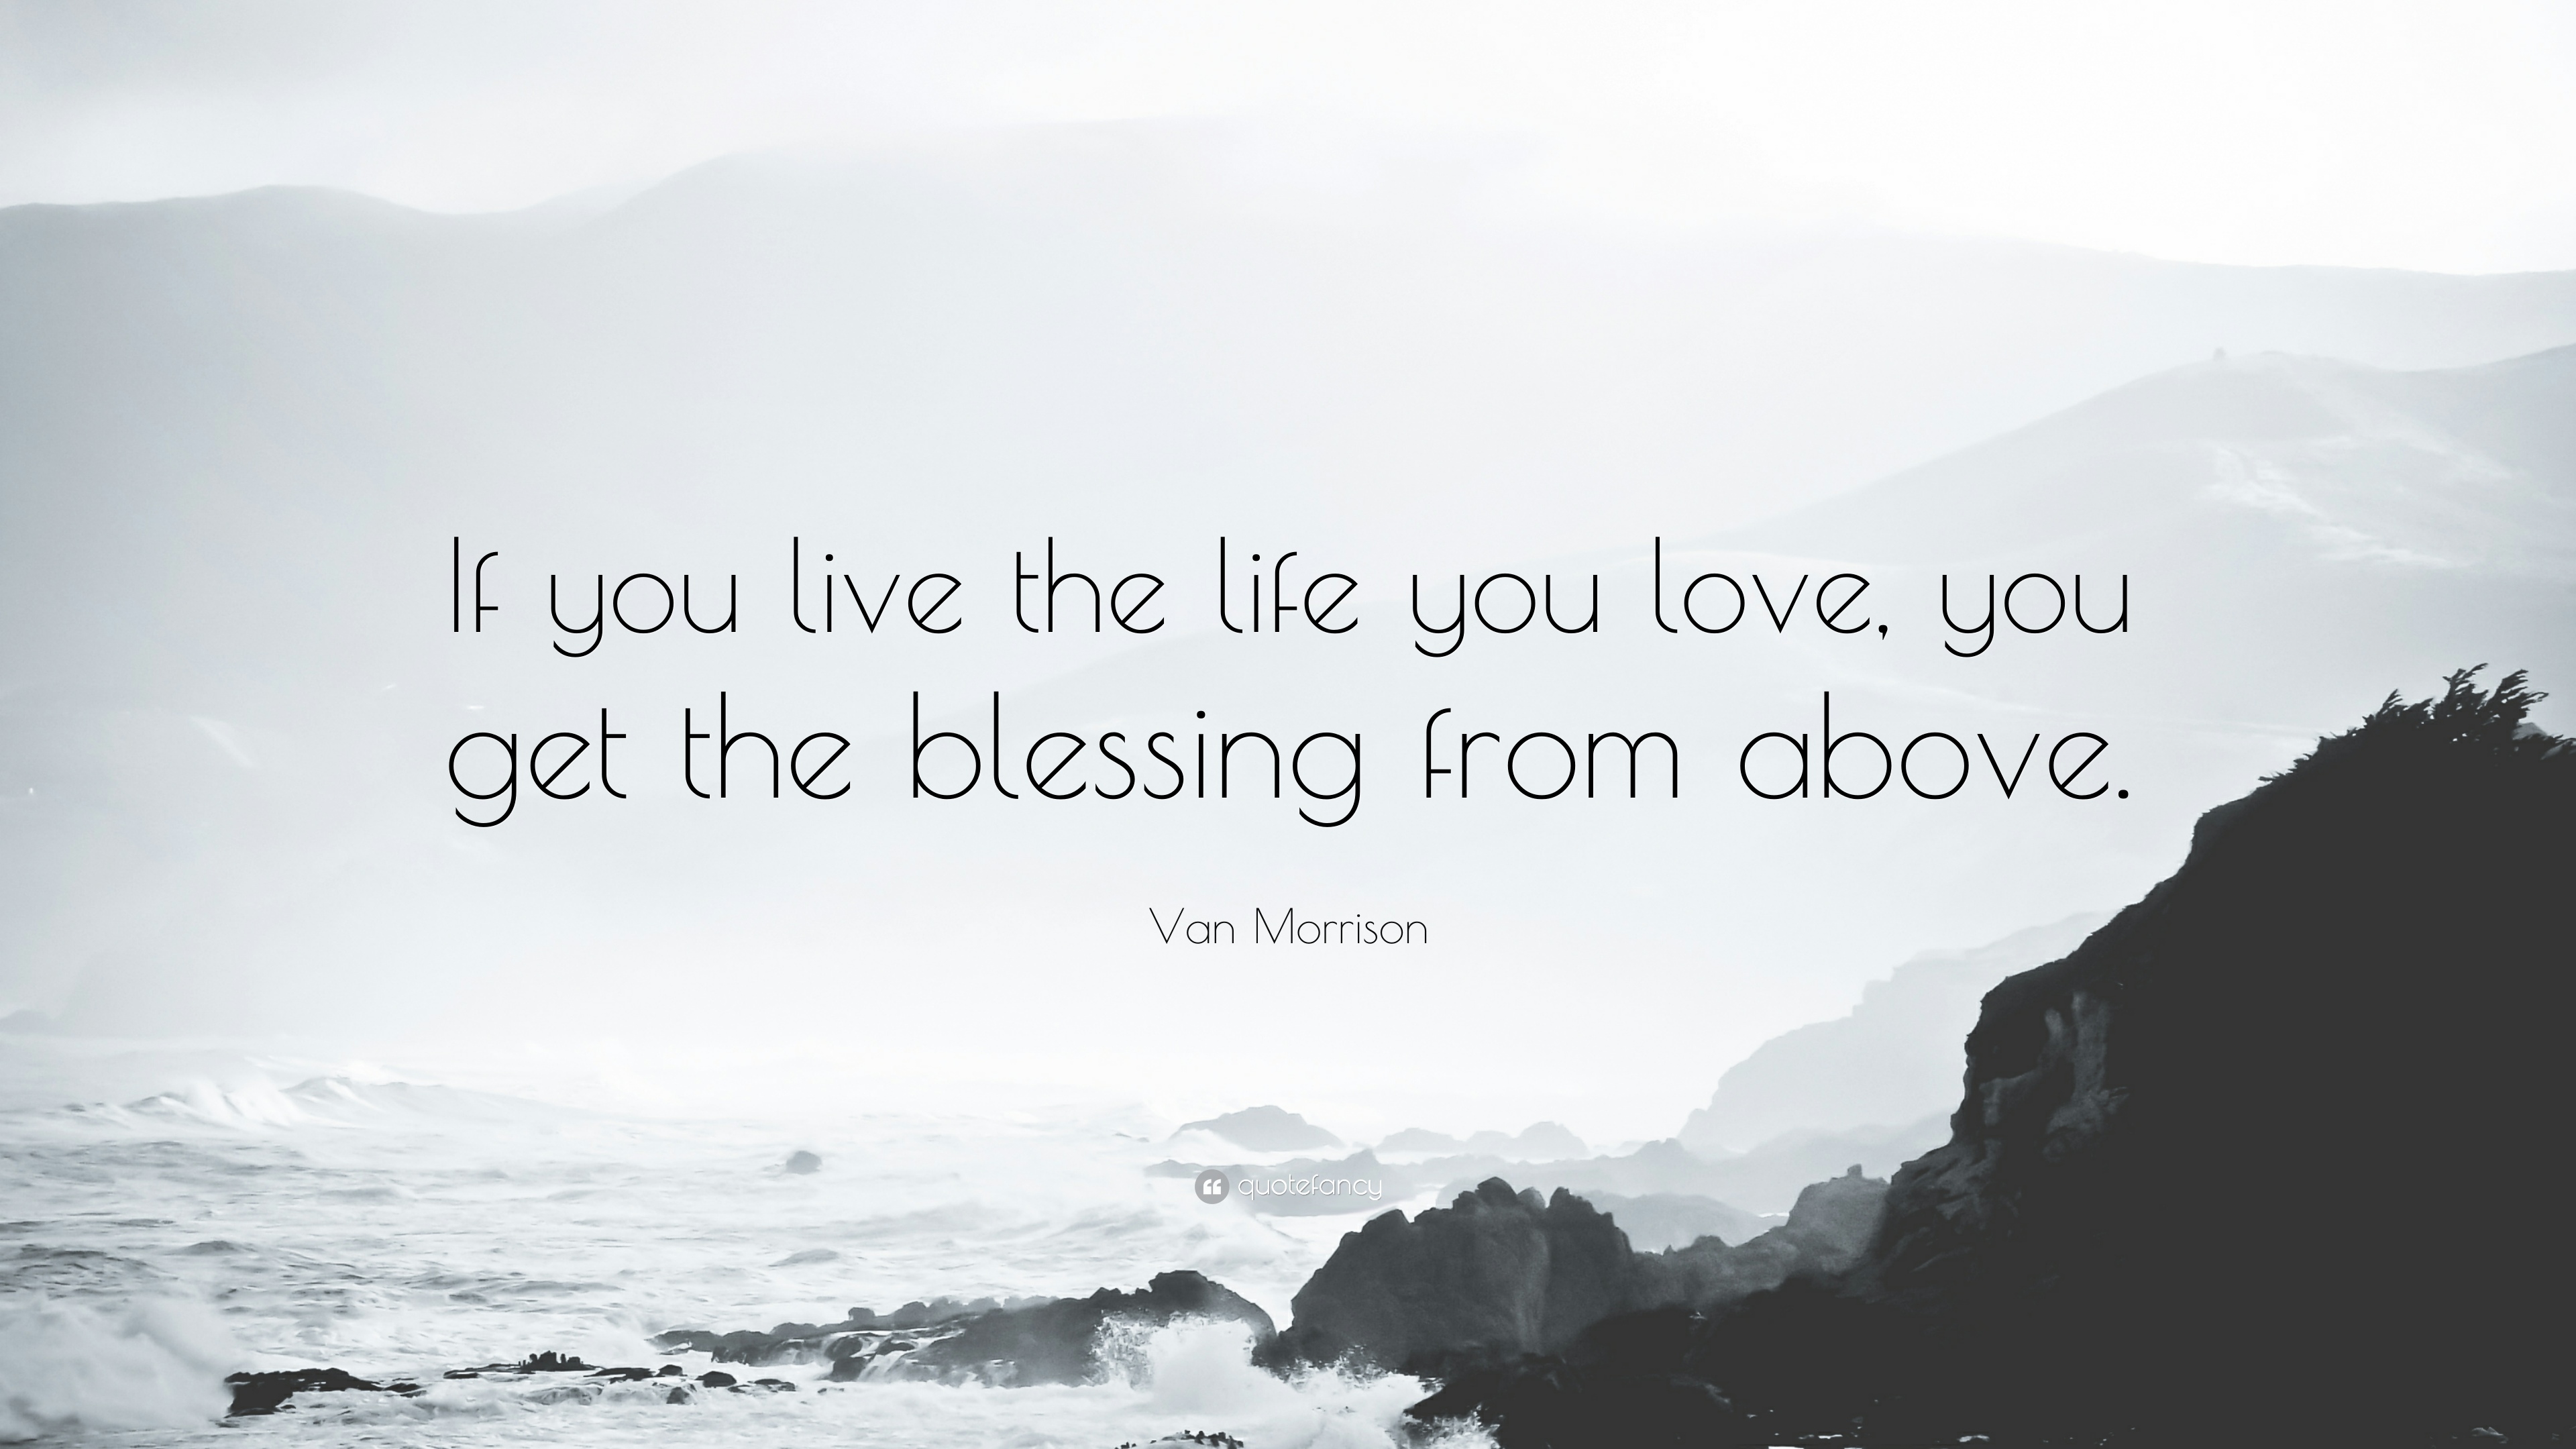 10 Best Van Morrison Quotes